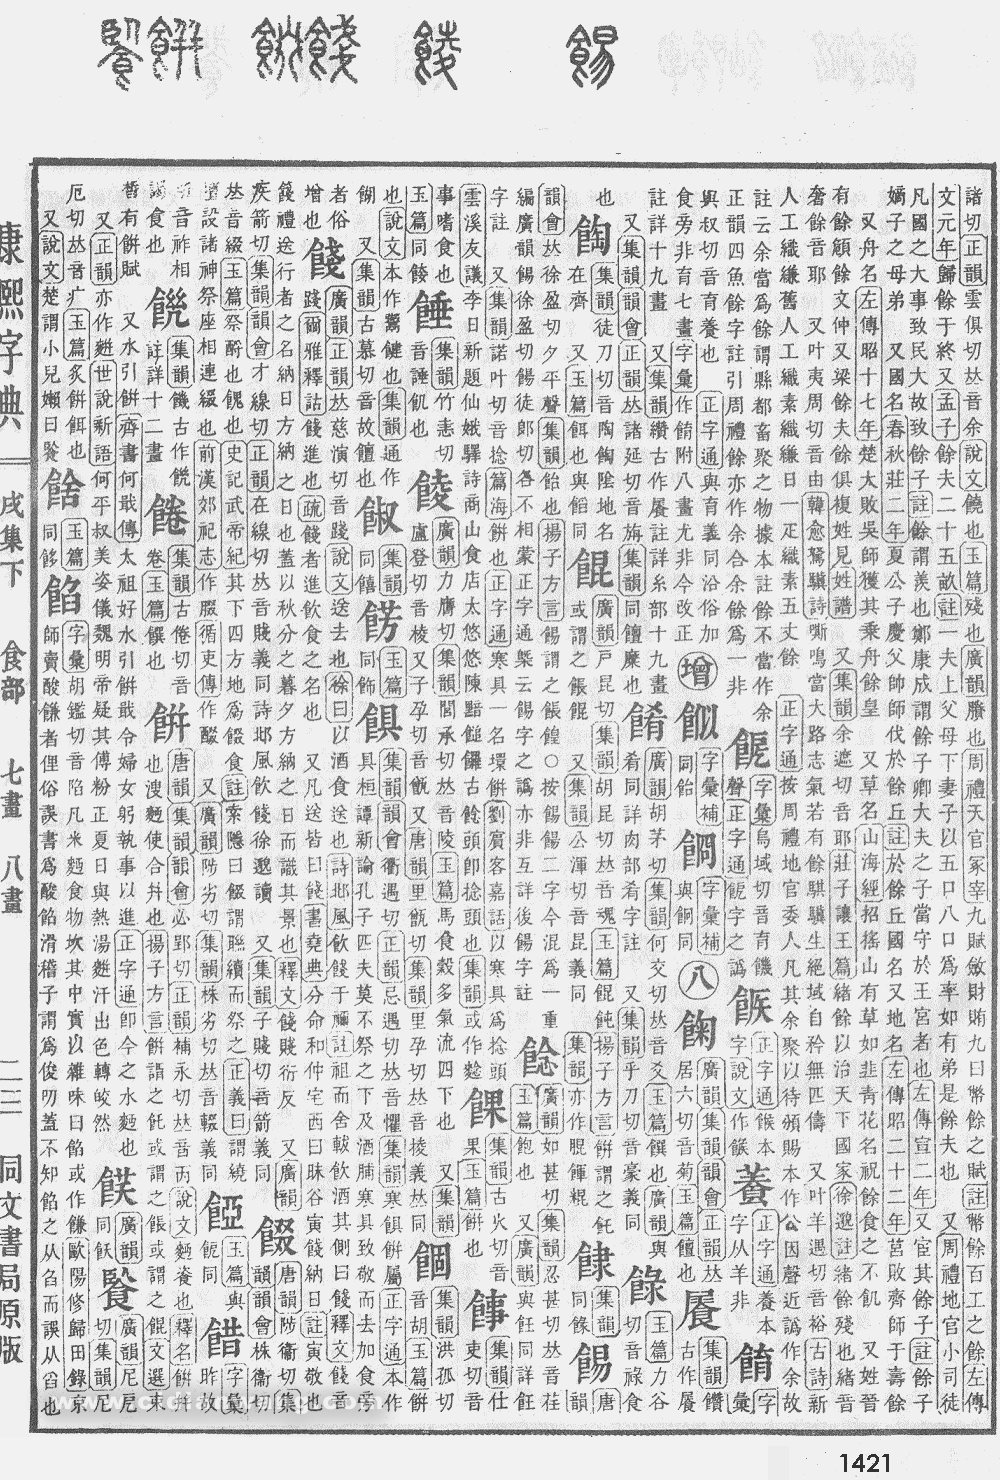 康熙字典掃描版第1421頁